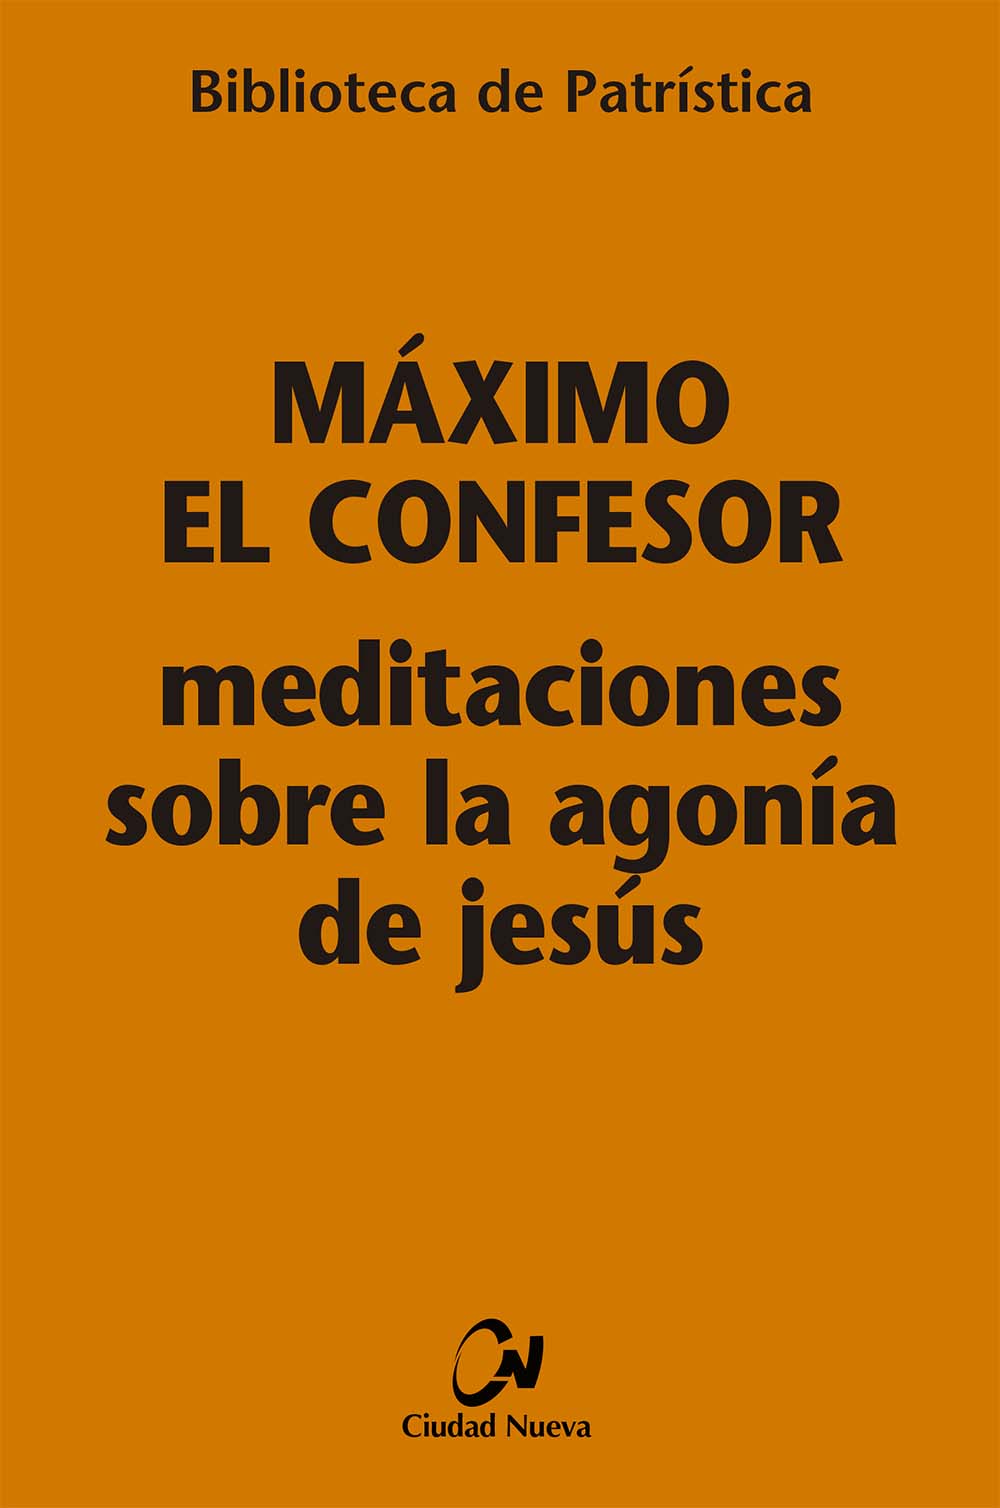 meditaciones-sobre-la-agonia-de-jesus-[bpa-7]